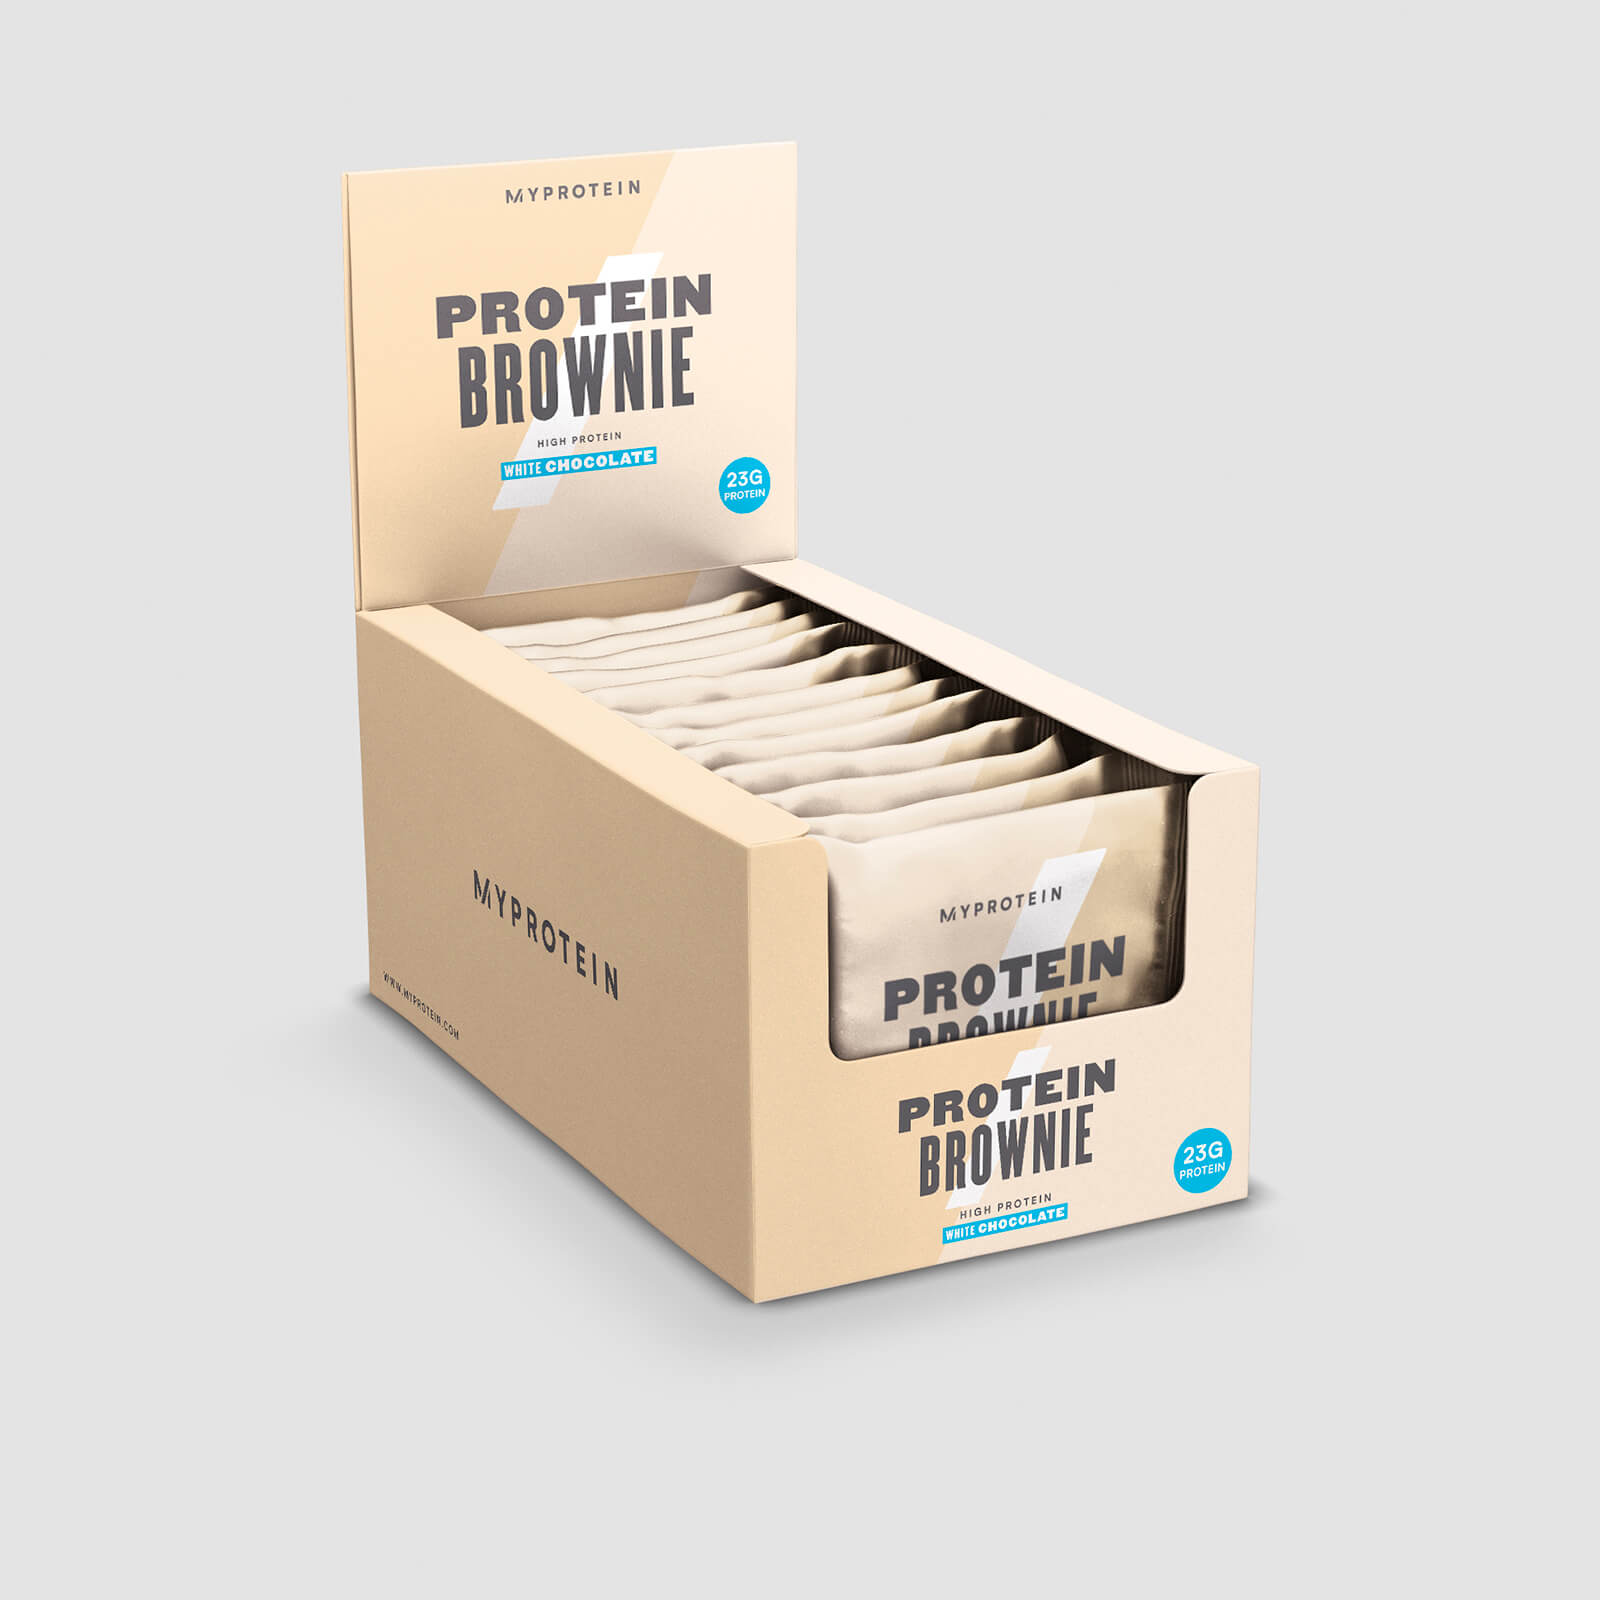 Myprotein Protein Brownie - 12 x 75g - New - White Chocolate